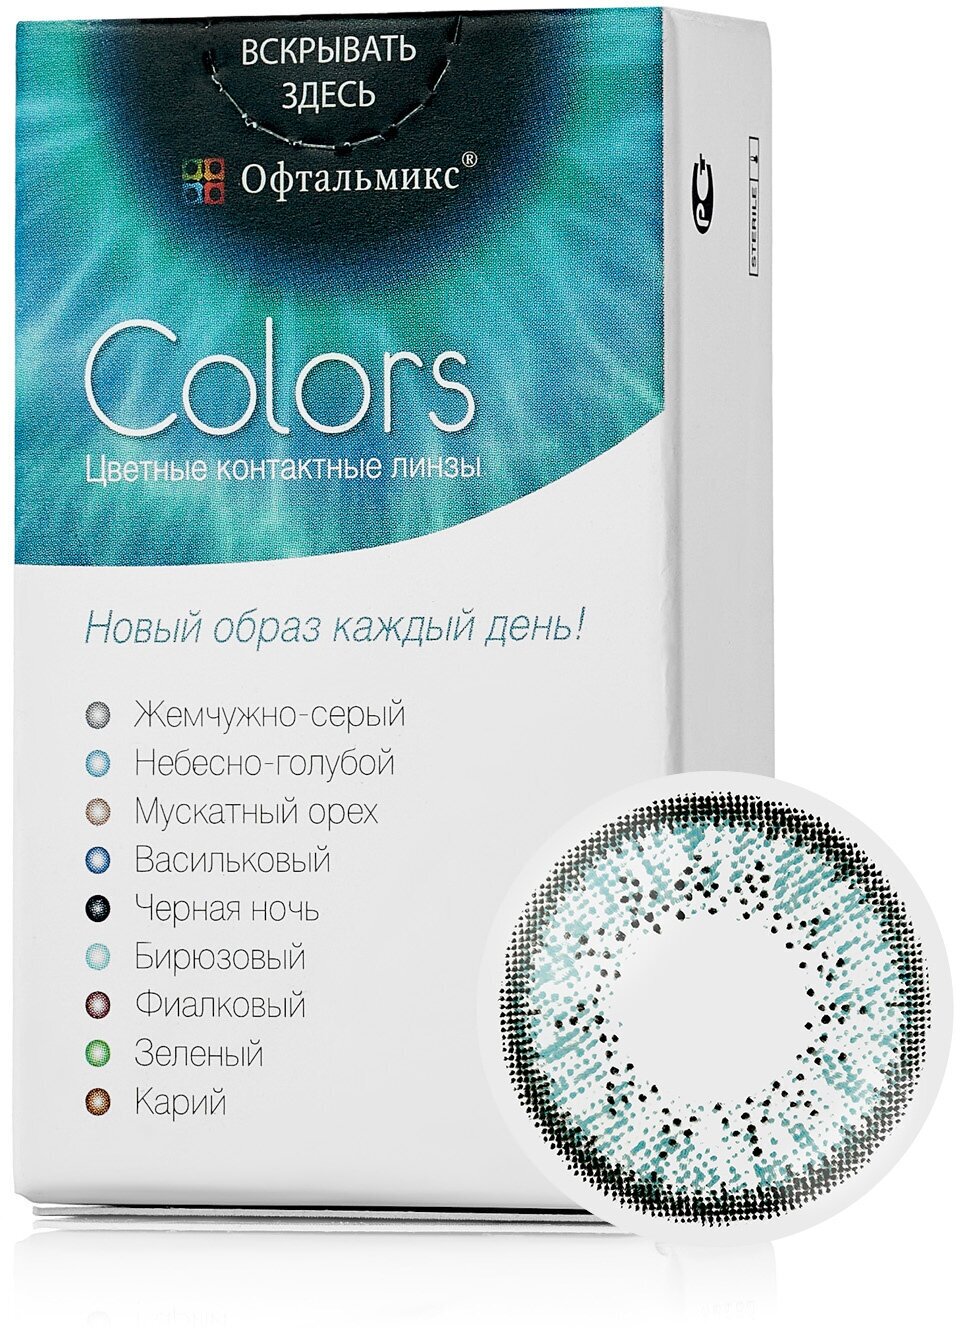 Цветные контактные линзы Офтальмикс Color Sky blue (небесно-голубой) R8.6 -2.5D (2шт.)